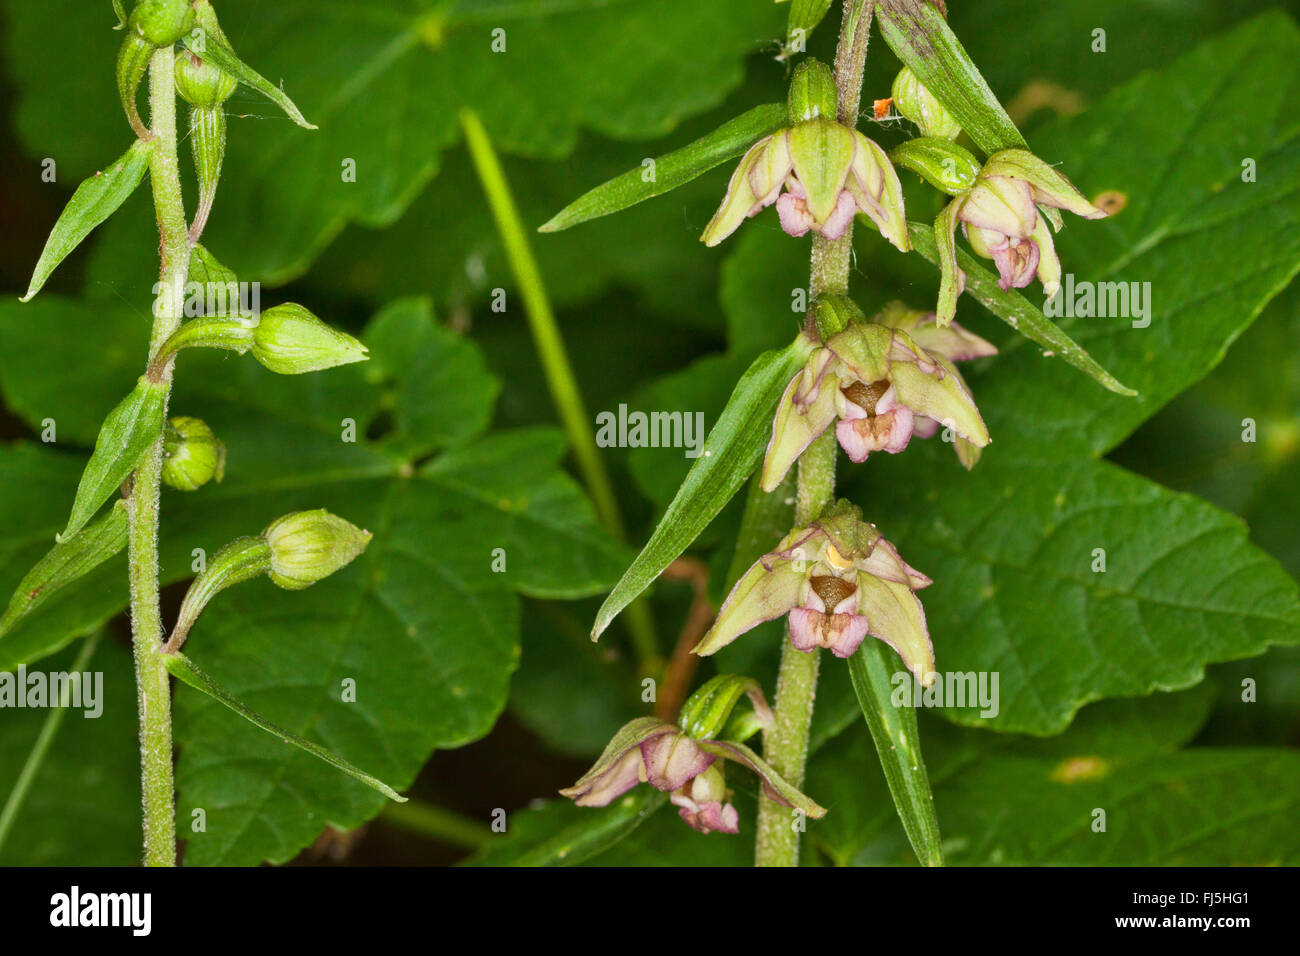 Broad-leaved helleborine, Eastern helleborine (Epipactis helleborine), flowers and buds, Germany, Mecklenburg-Western Pomerania Stock Photo